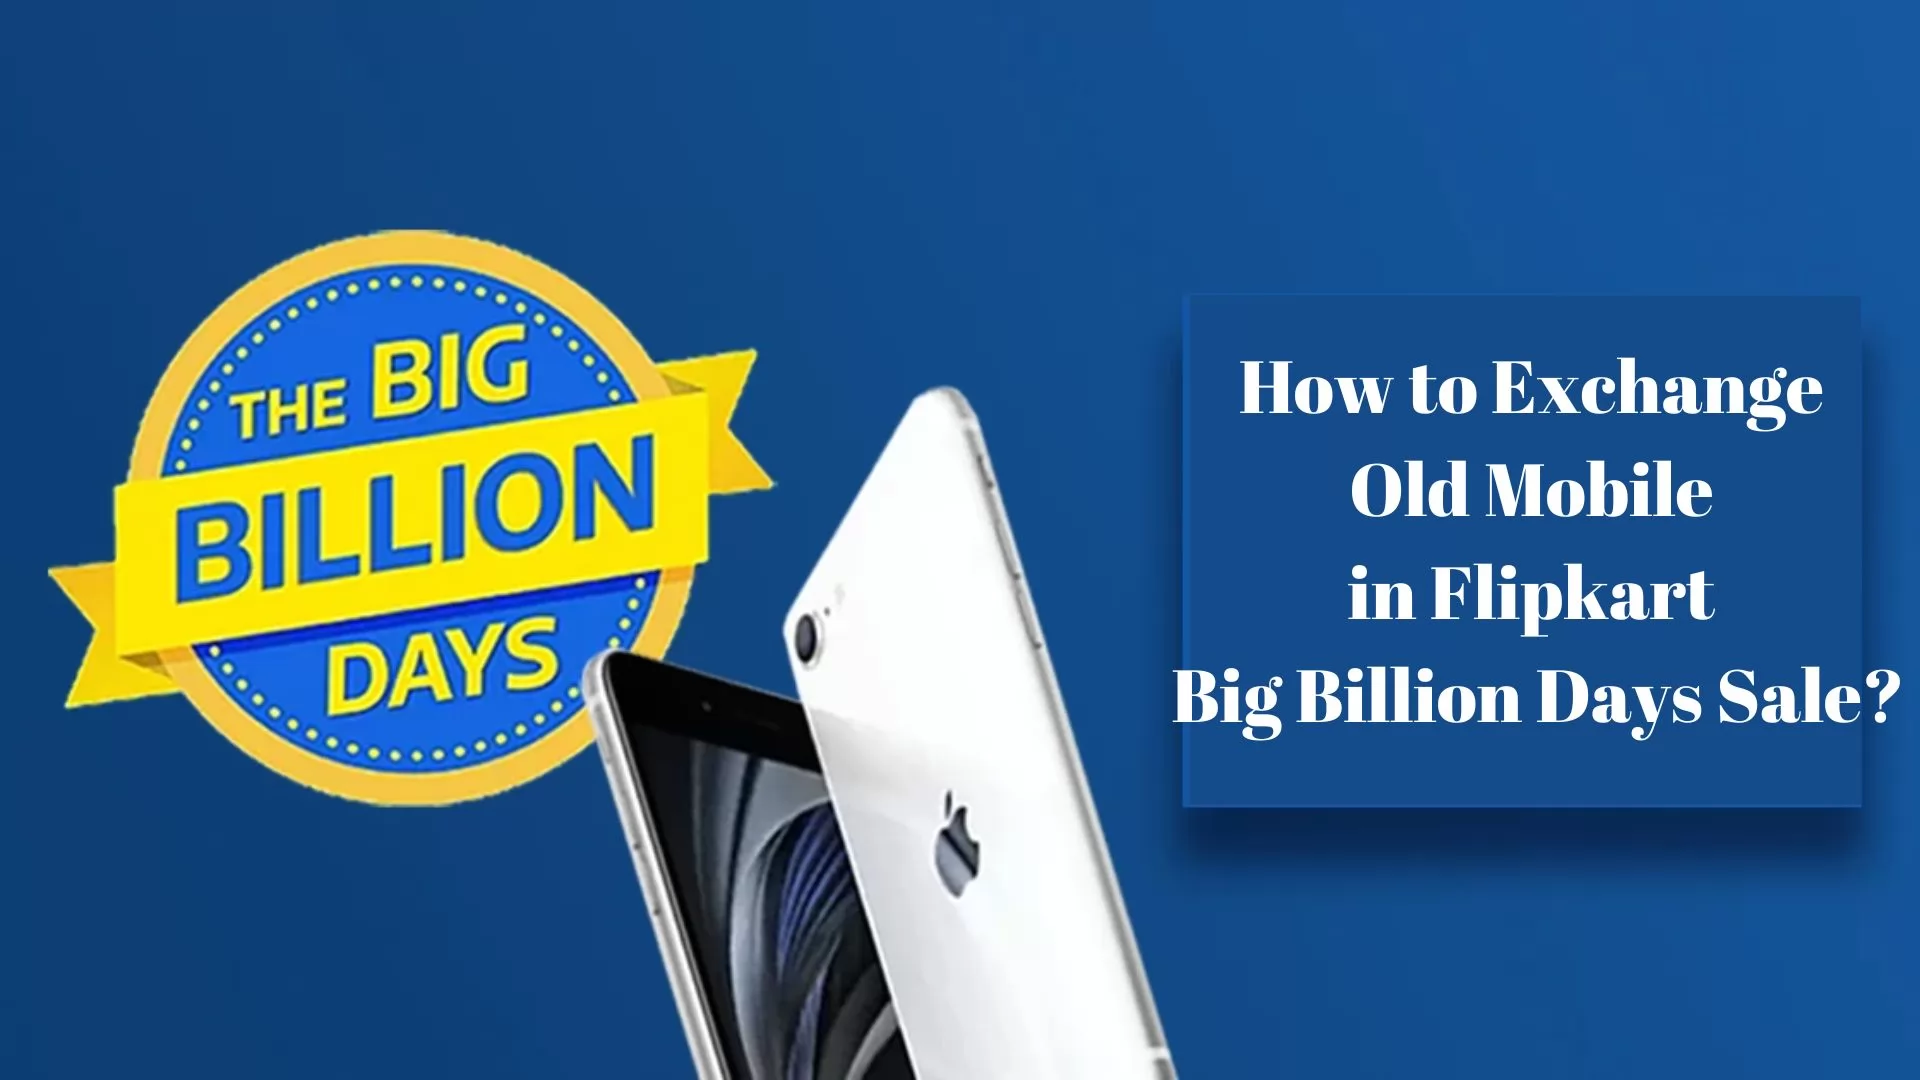 How to Exchange Old Mobile in Flipkart Big Billion Days Sale?